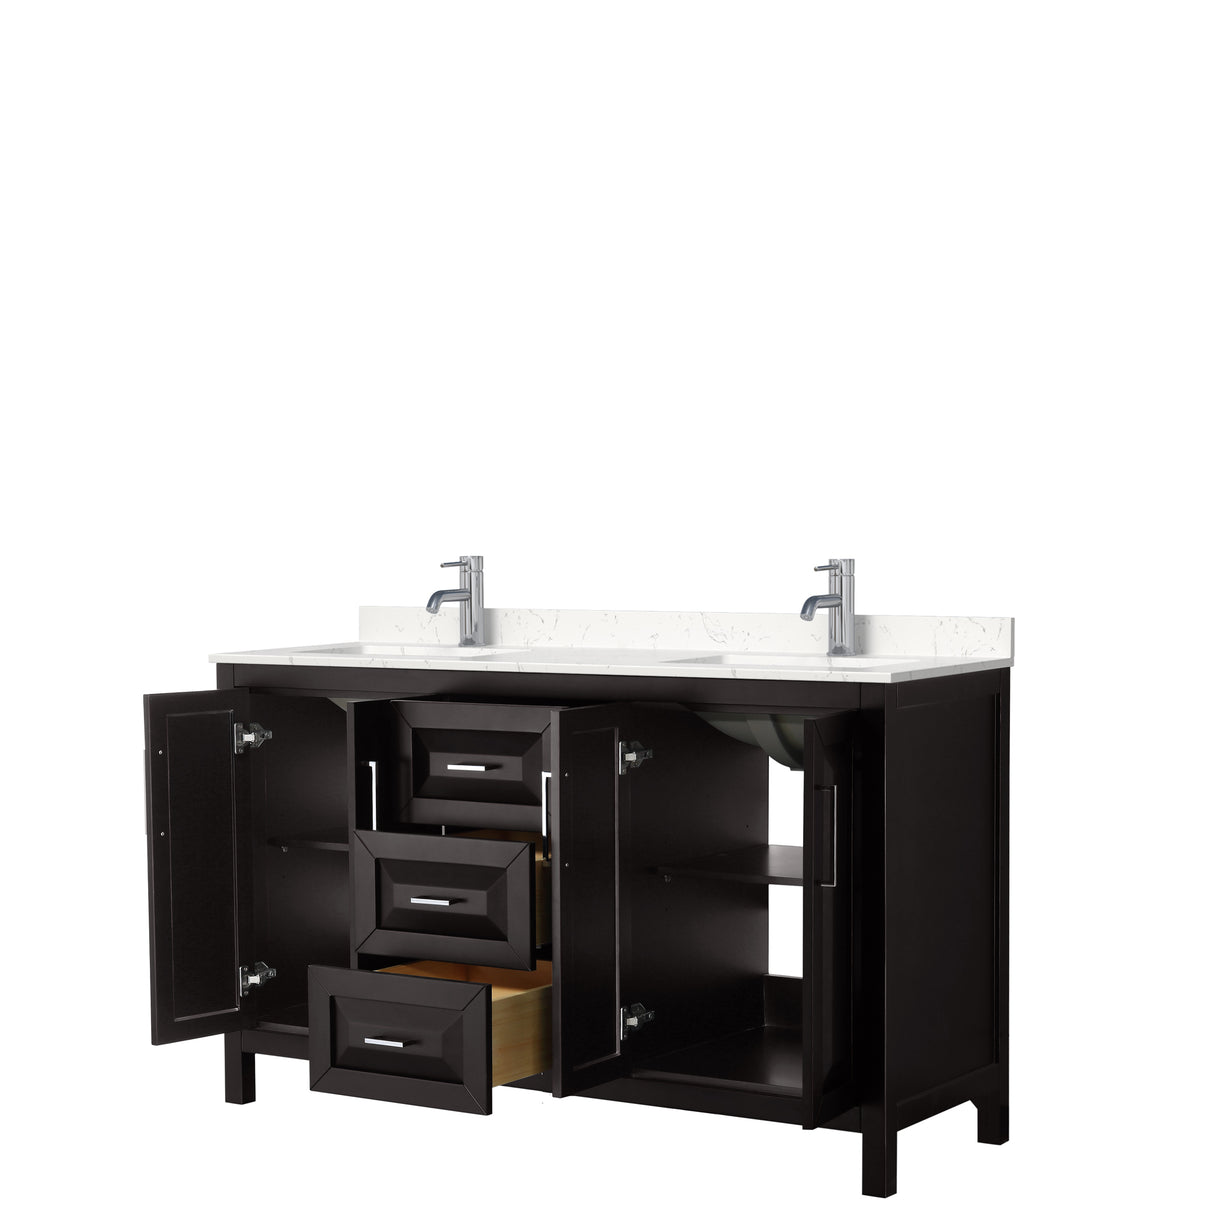 Daria 60 Inch Double Bathroom Vanity in Dark Espresso Carrara Cultured Marble Countertop Undermount Square Sinks No Mirror